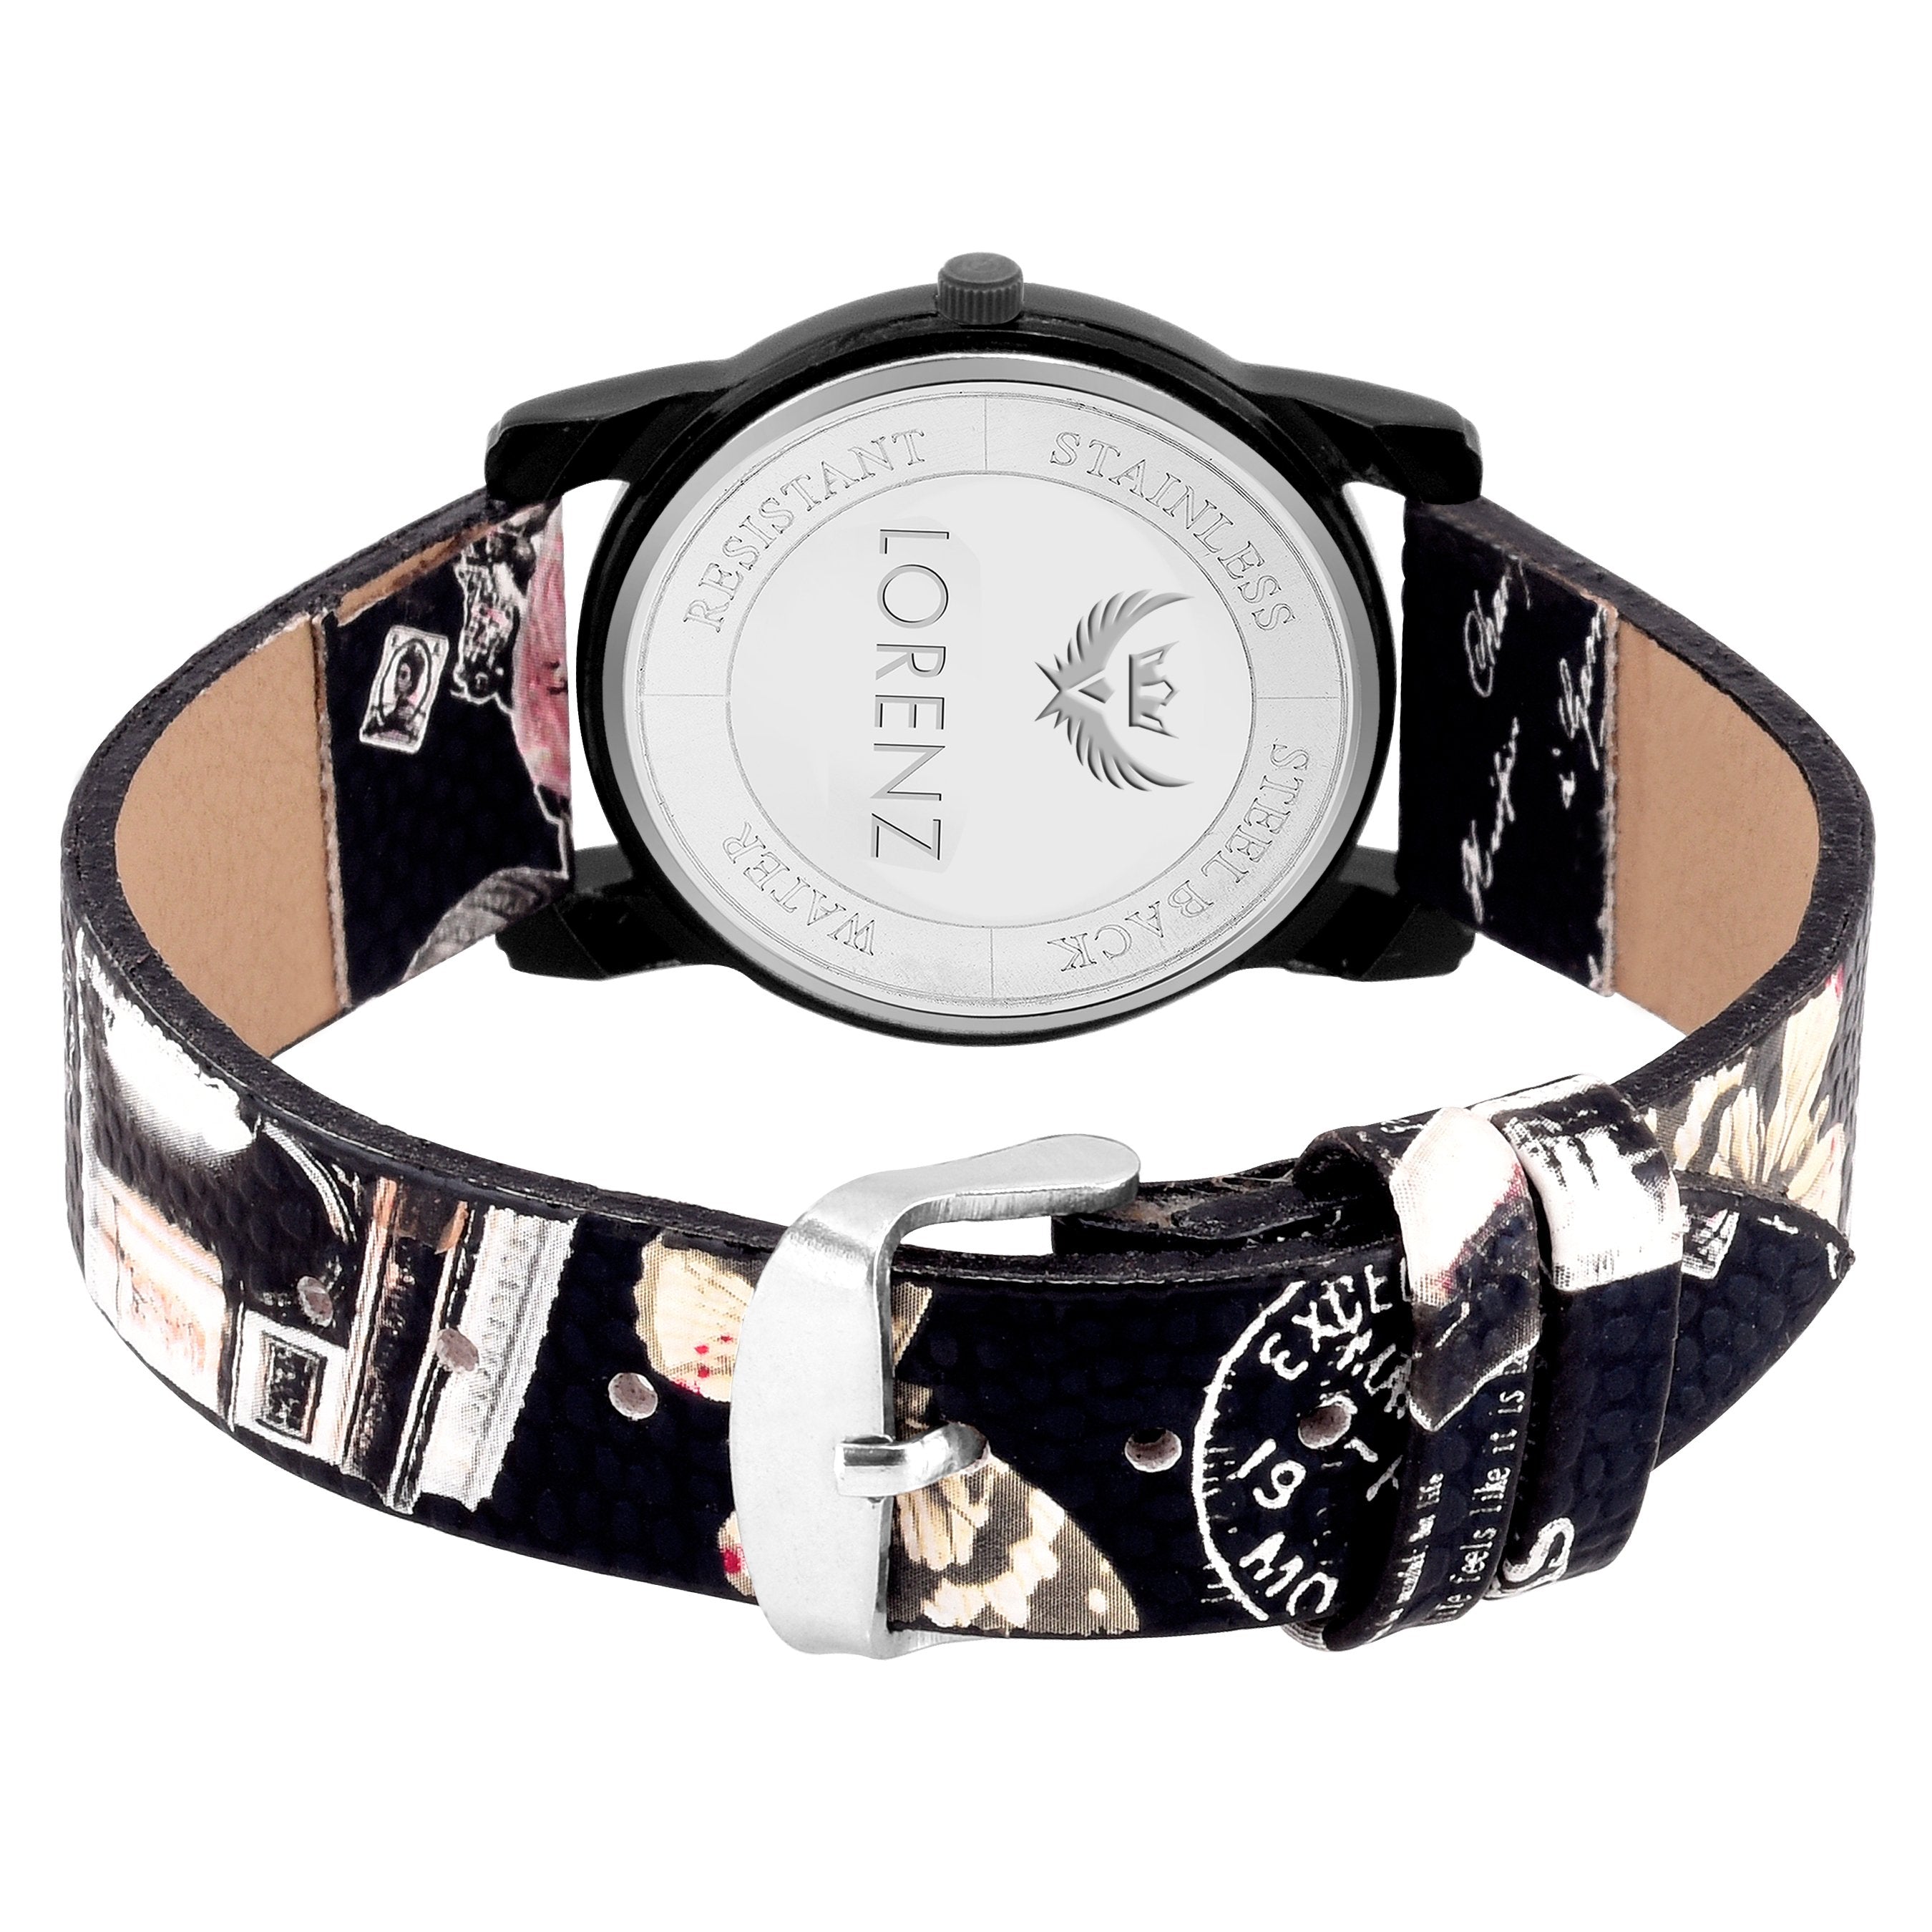 Lorenz Black Dial Printed Leather Strap Girls Watch -AS-38A - Lorenz Fashion